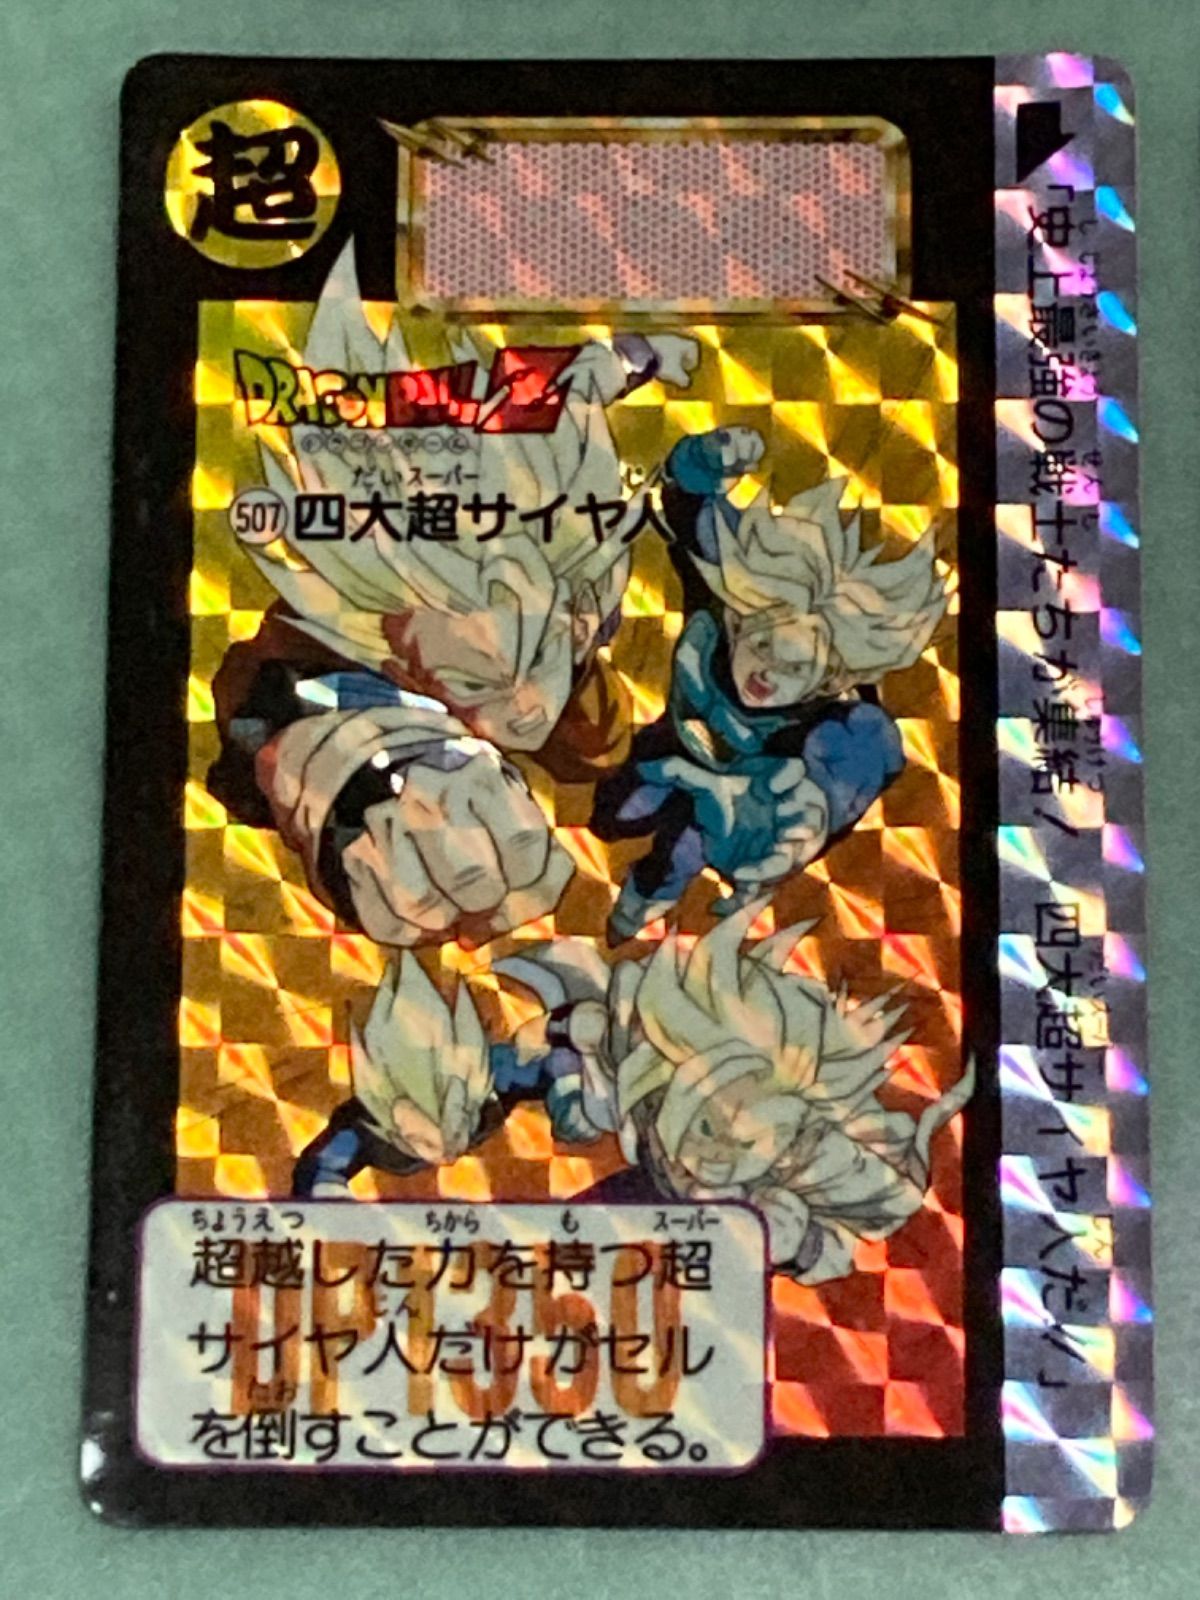 ドラゴンボールZ カードダス 507四大超サイヤ人 - ドラゴンボールカード